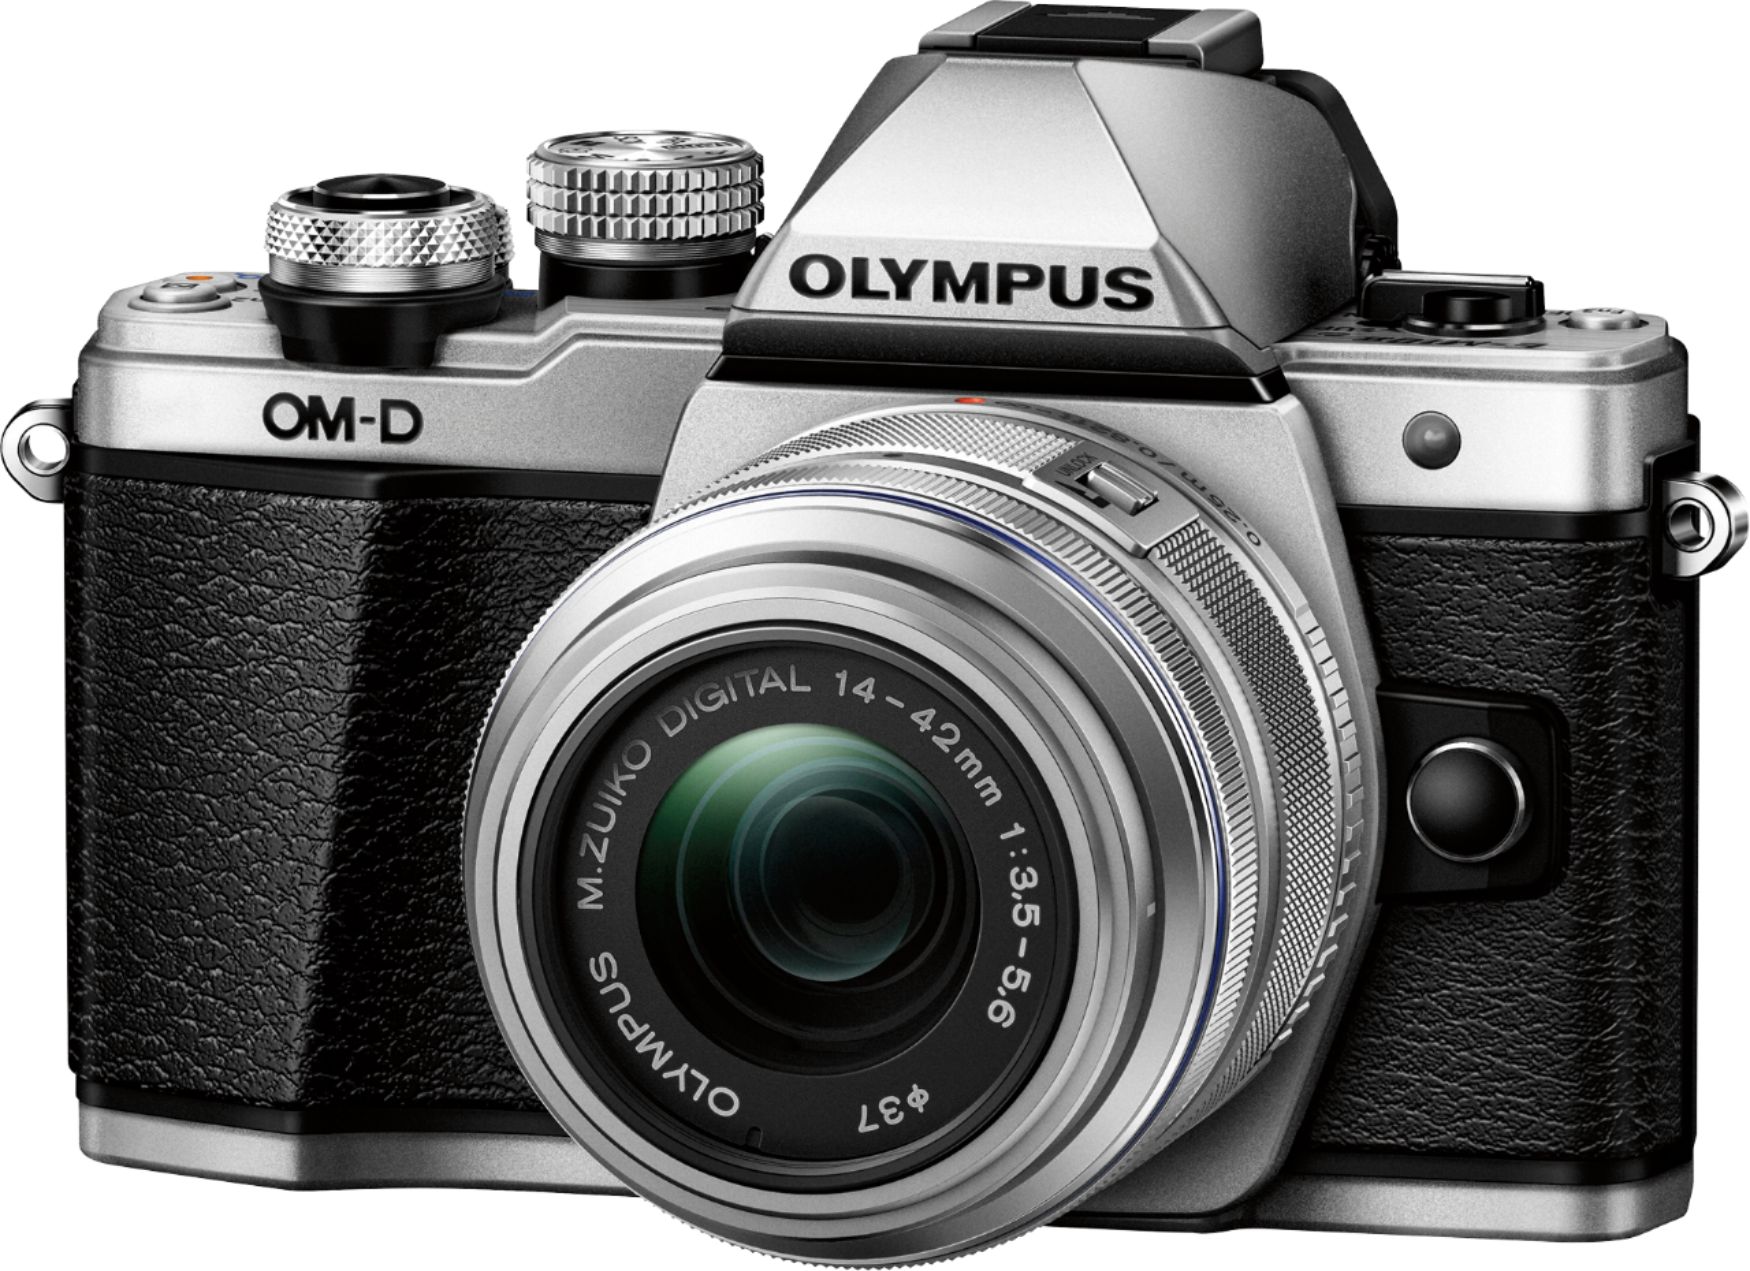 OLYMPUS OM-D E-M10 SILVER - デジタルカメラ